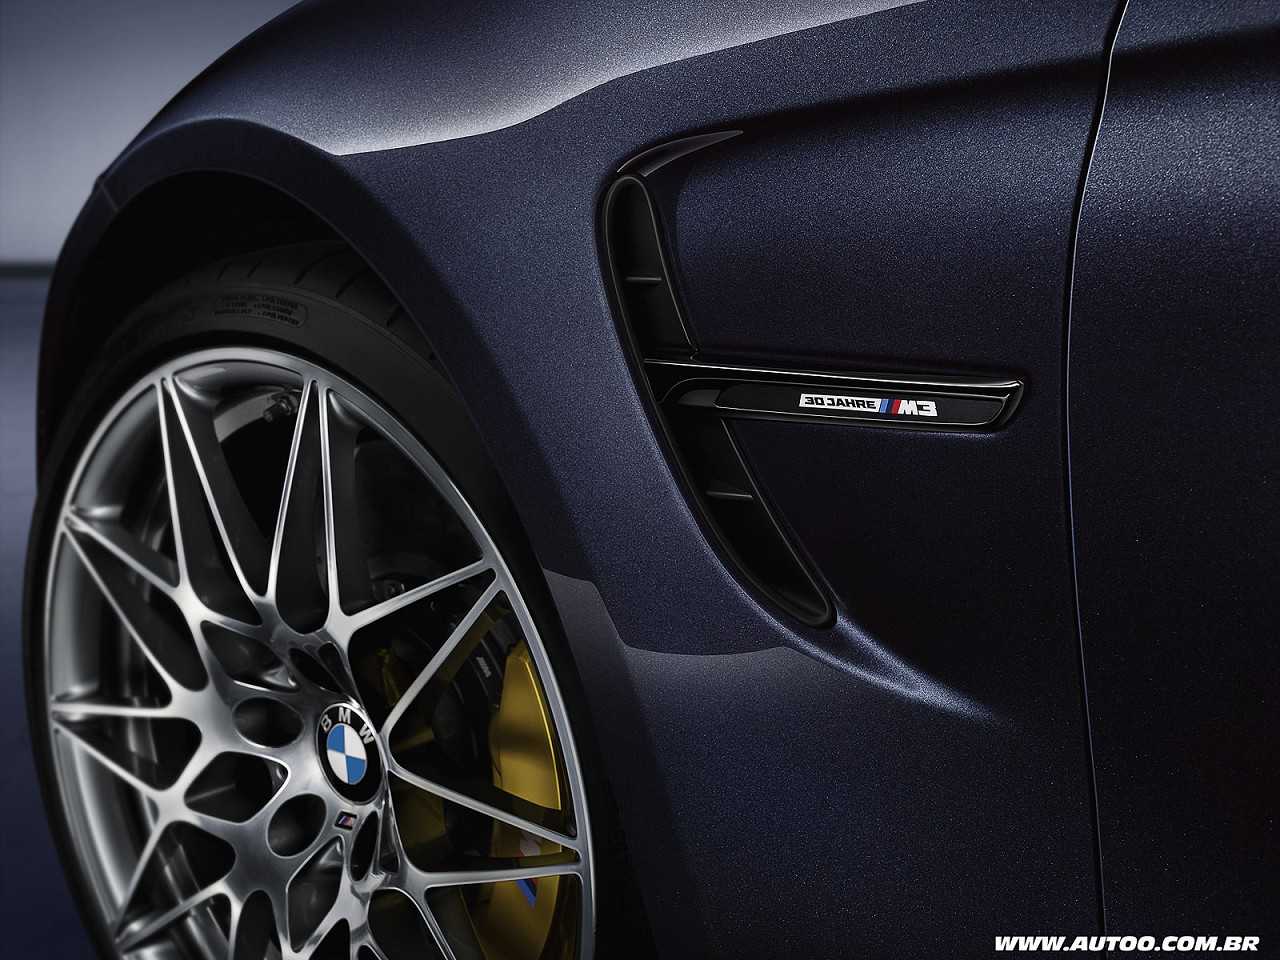 BMWM3 2016 - outros